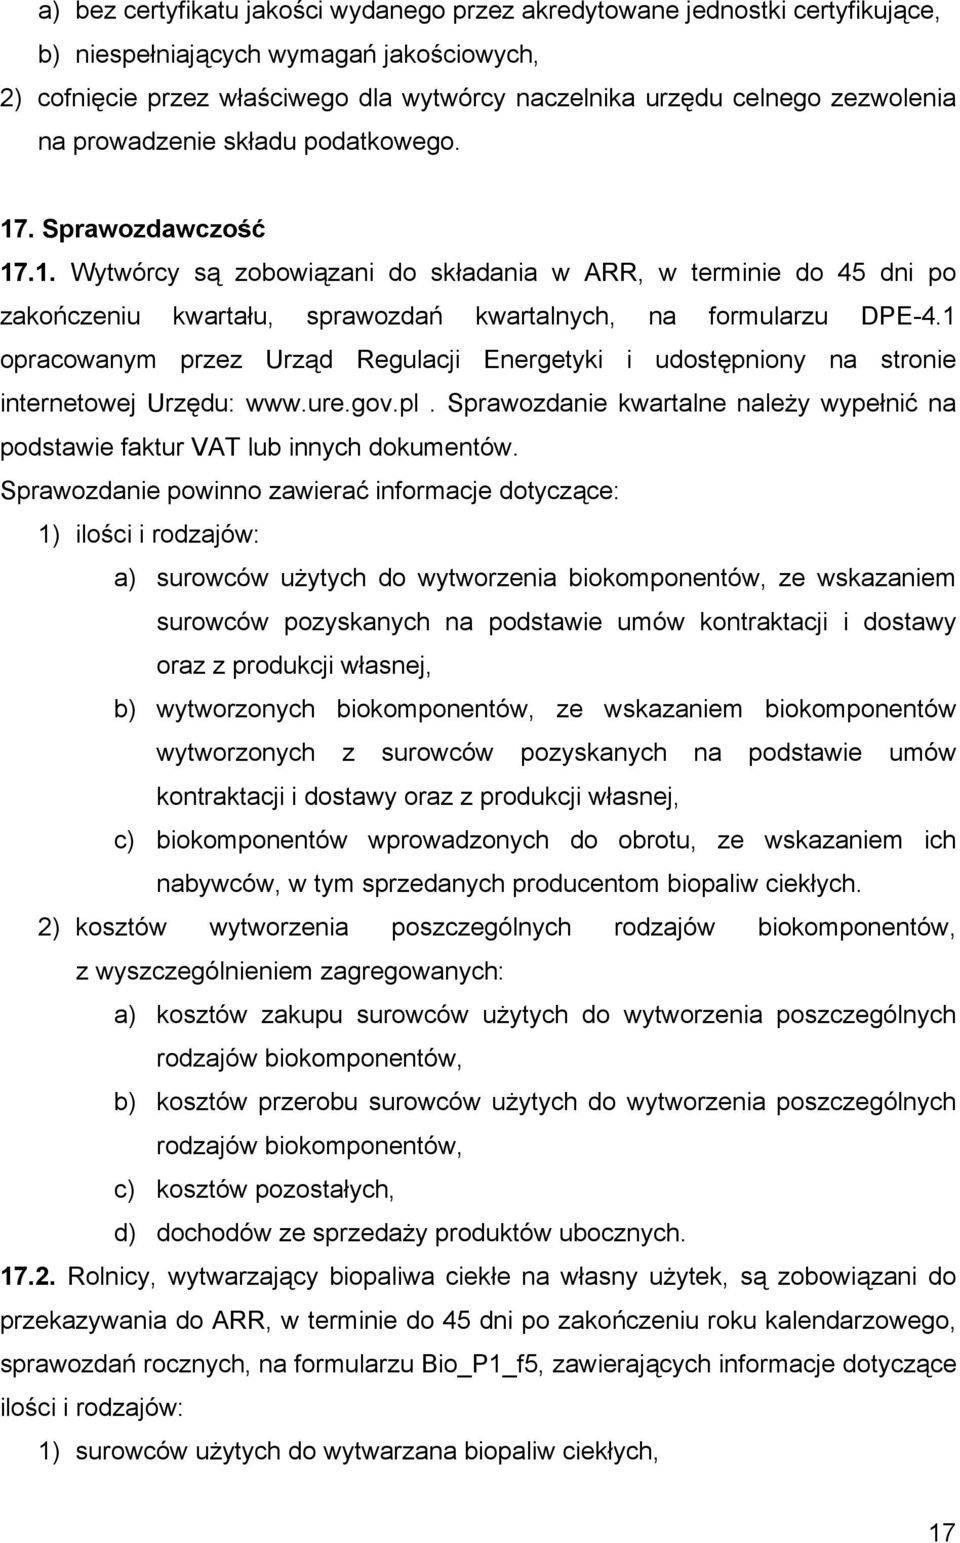 1 opracowanym przez Urząd Regulacji Energetyki i udostępniony na stronie internetowej Urzędu: www.ure.gov.pl. Sprawozdanie kwartalne należy wypełnić na podstawie faktur VAT lub innych dokumentów.